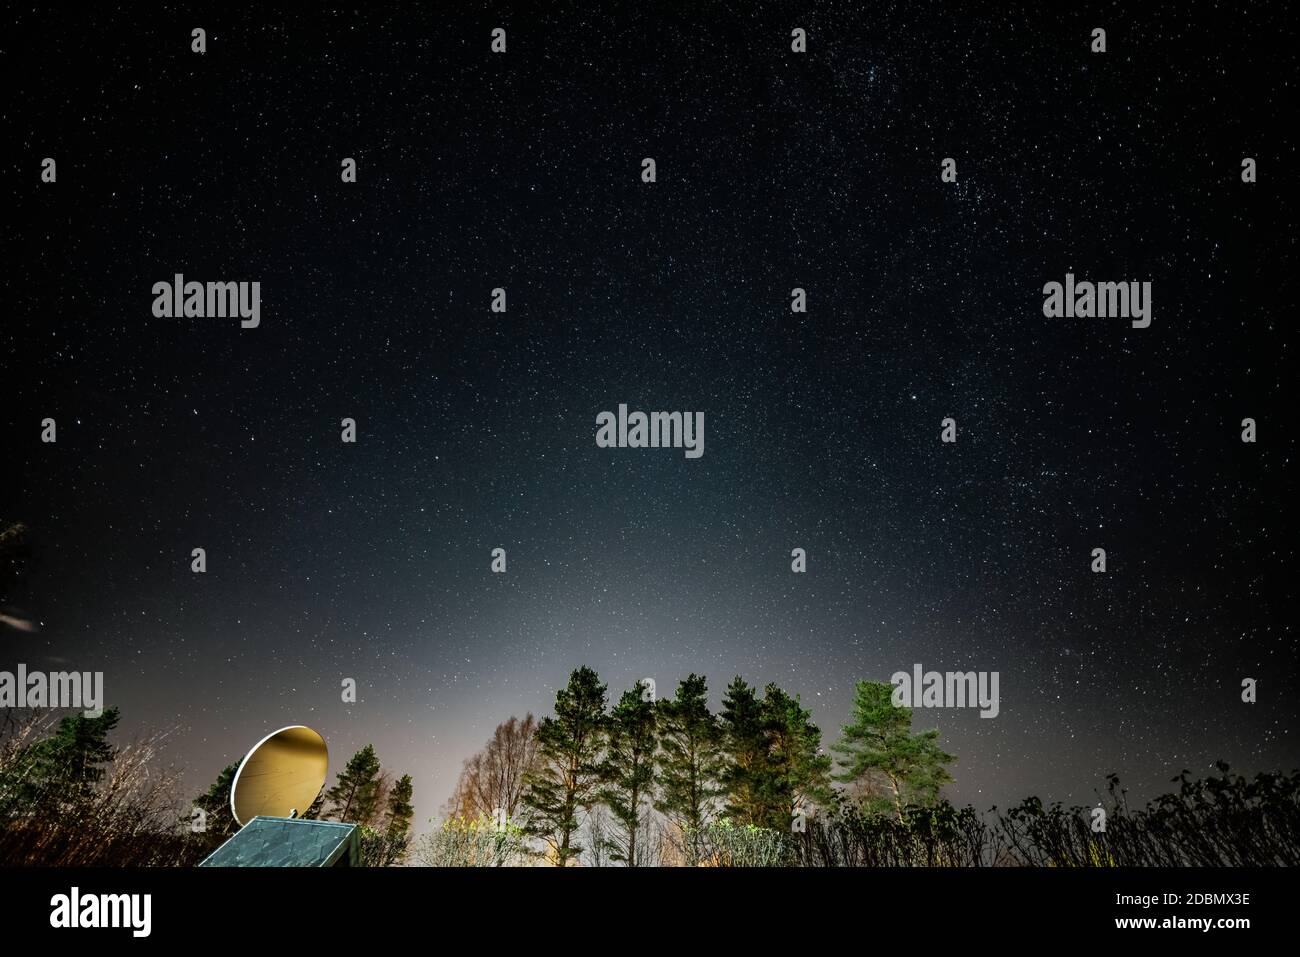 Immagine notturna dell'inquinamento luminoso del cielo stellato sopra i pini nella parte settentrionale della Svezia. Le luci provengono dalla città Umea, Vasterbotten contea Foto Stock